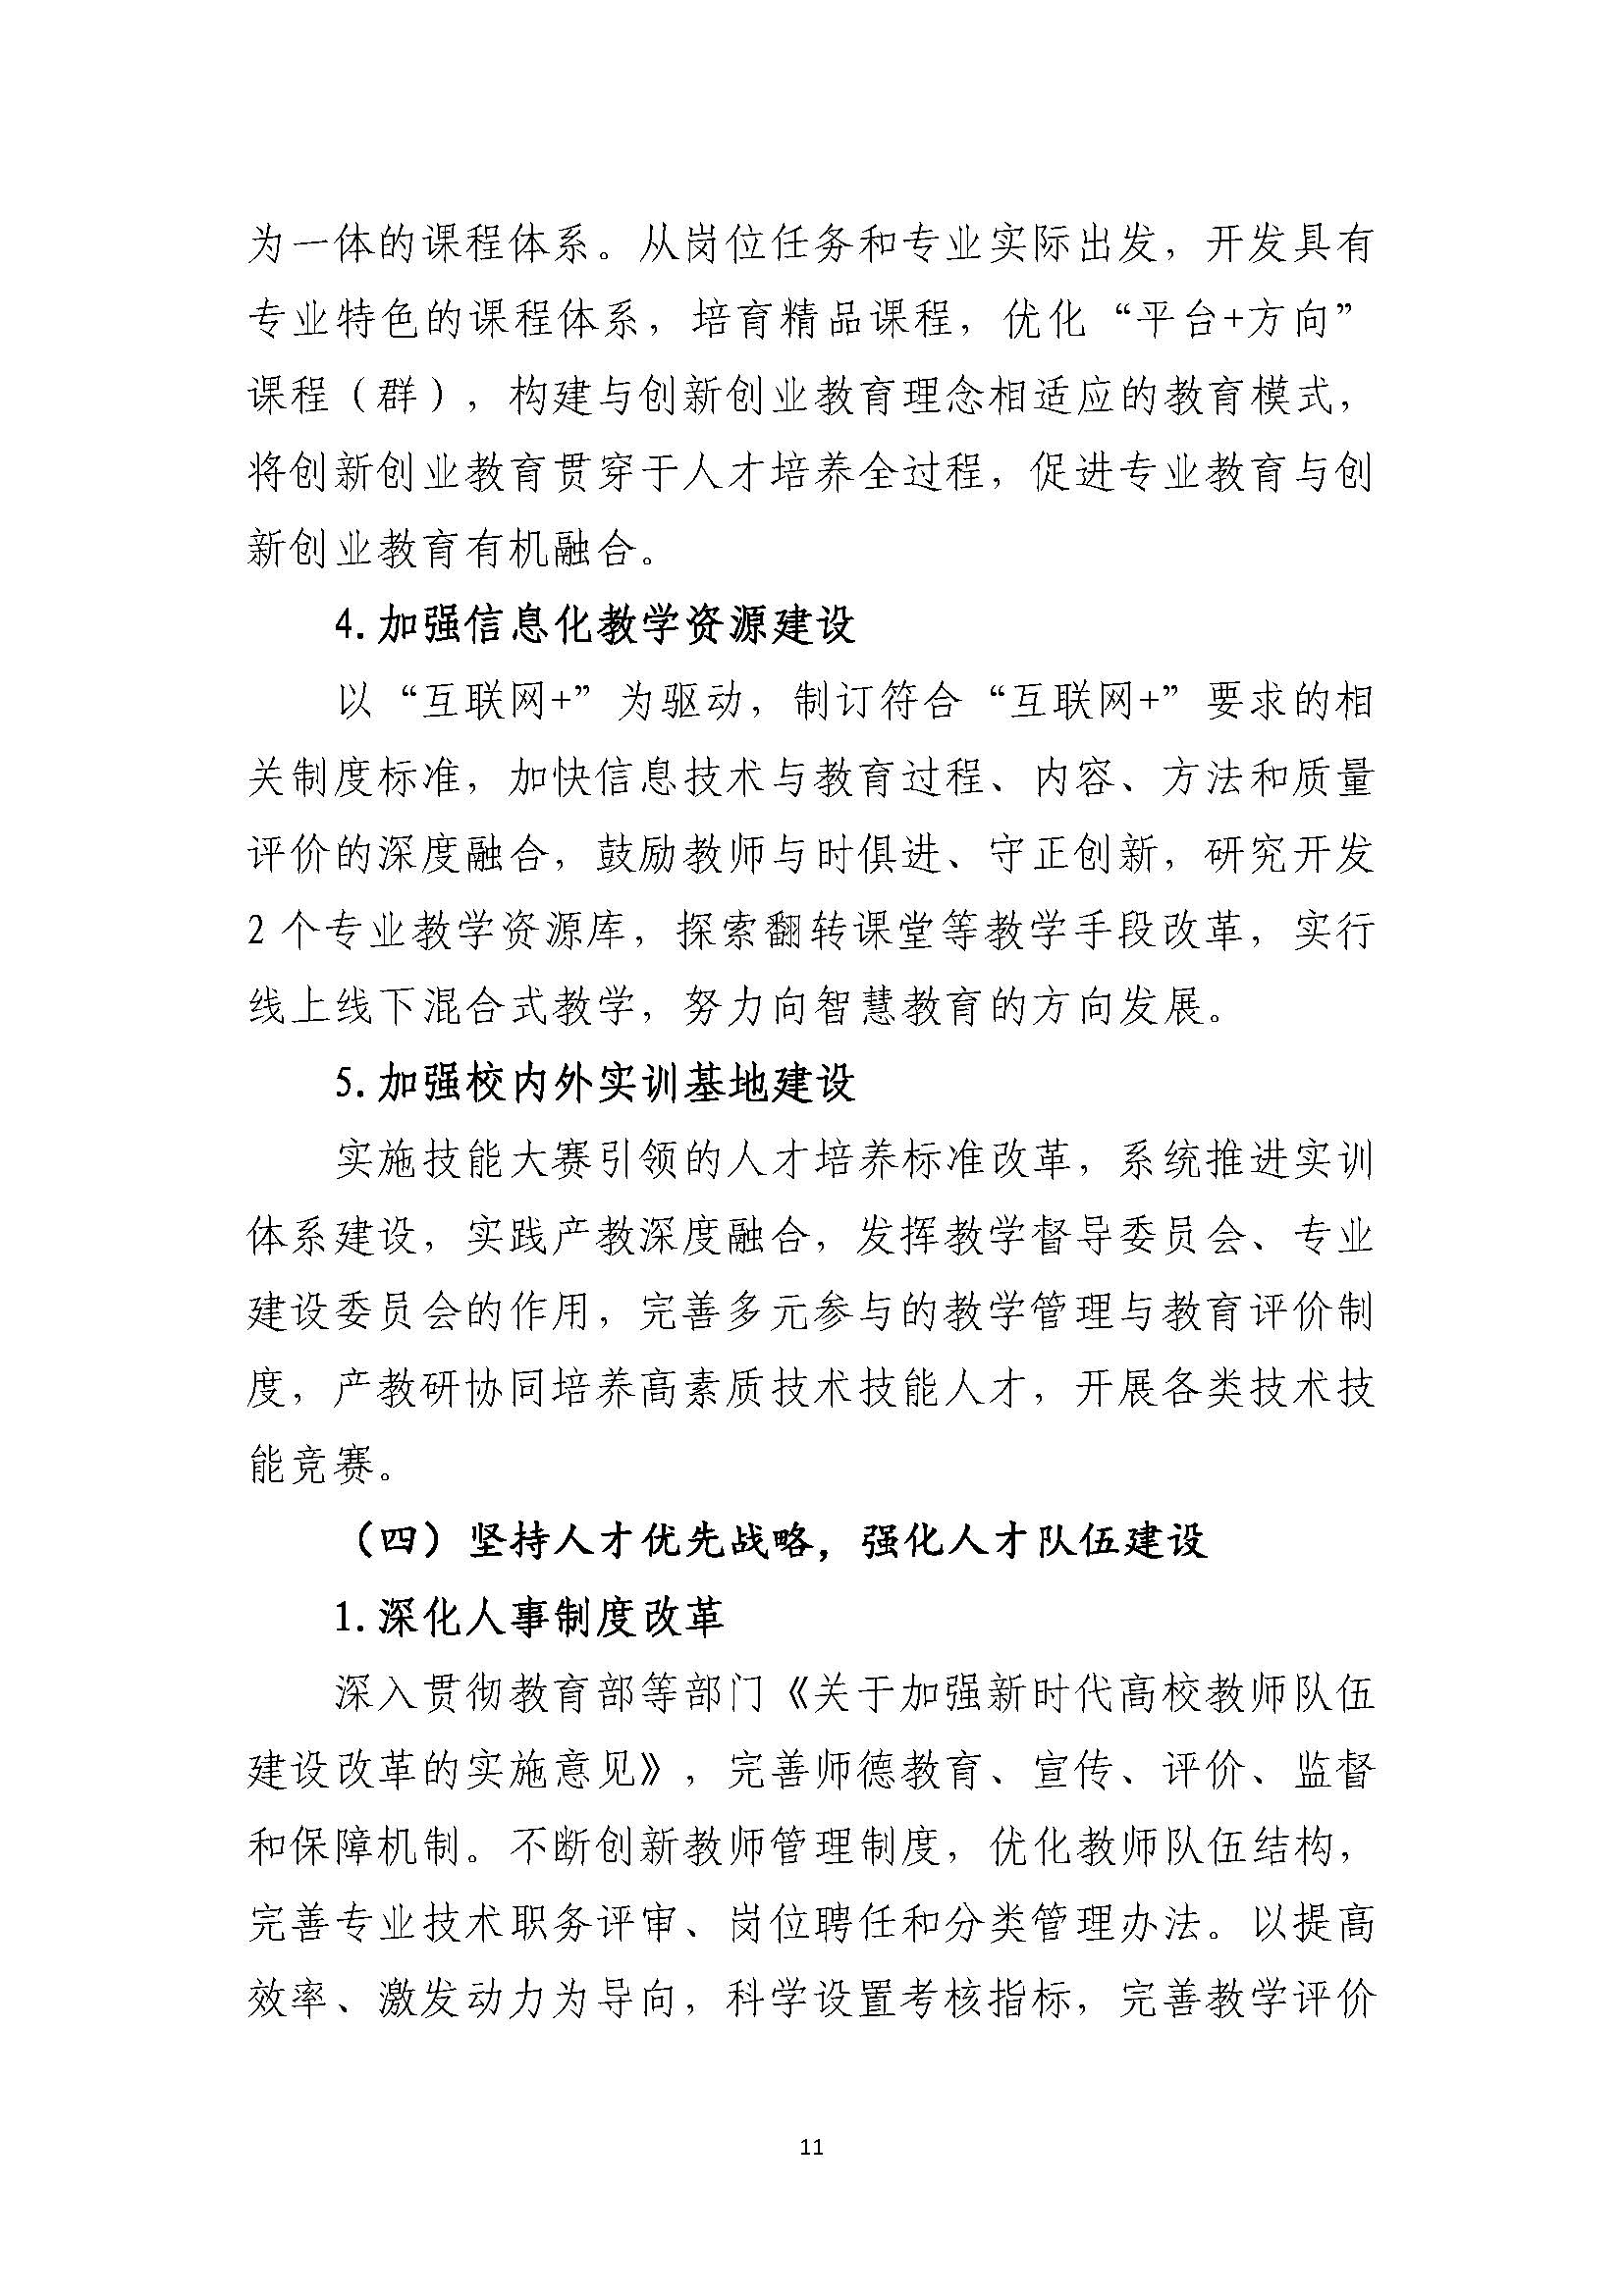 郑州黄河护理职业学院2021-2025年发展规划_页面_11.jpg